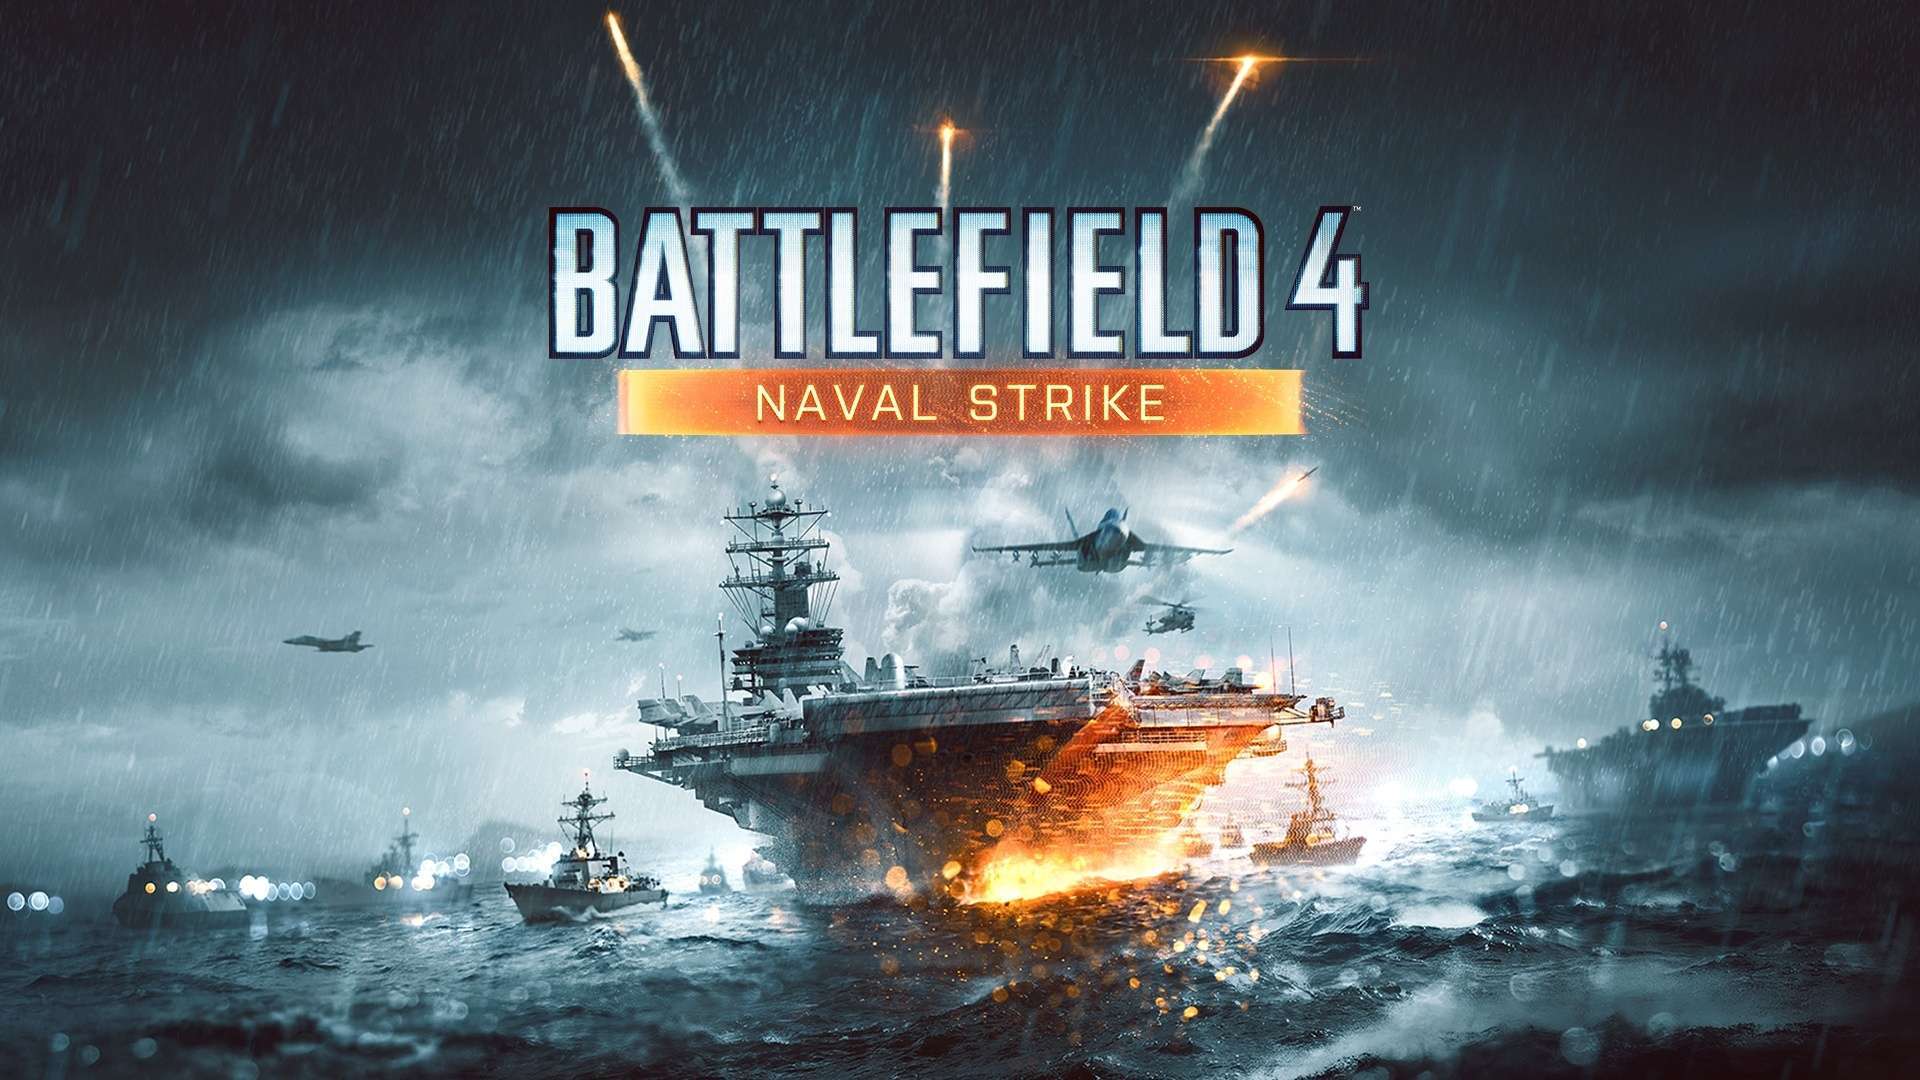 Wallpaper Battlefield 4 Naval Strike HD Wallpaper 1080p Upload at 1920x1080